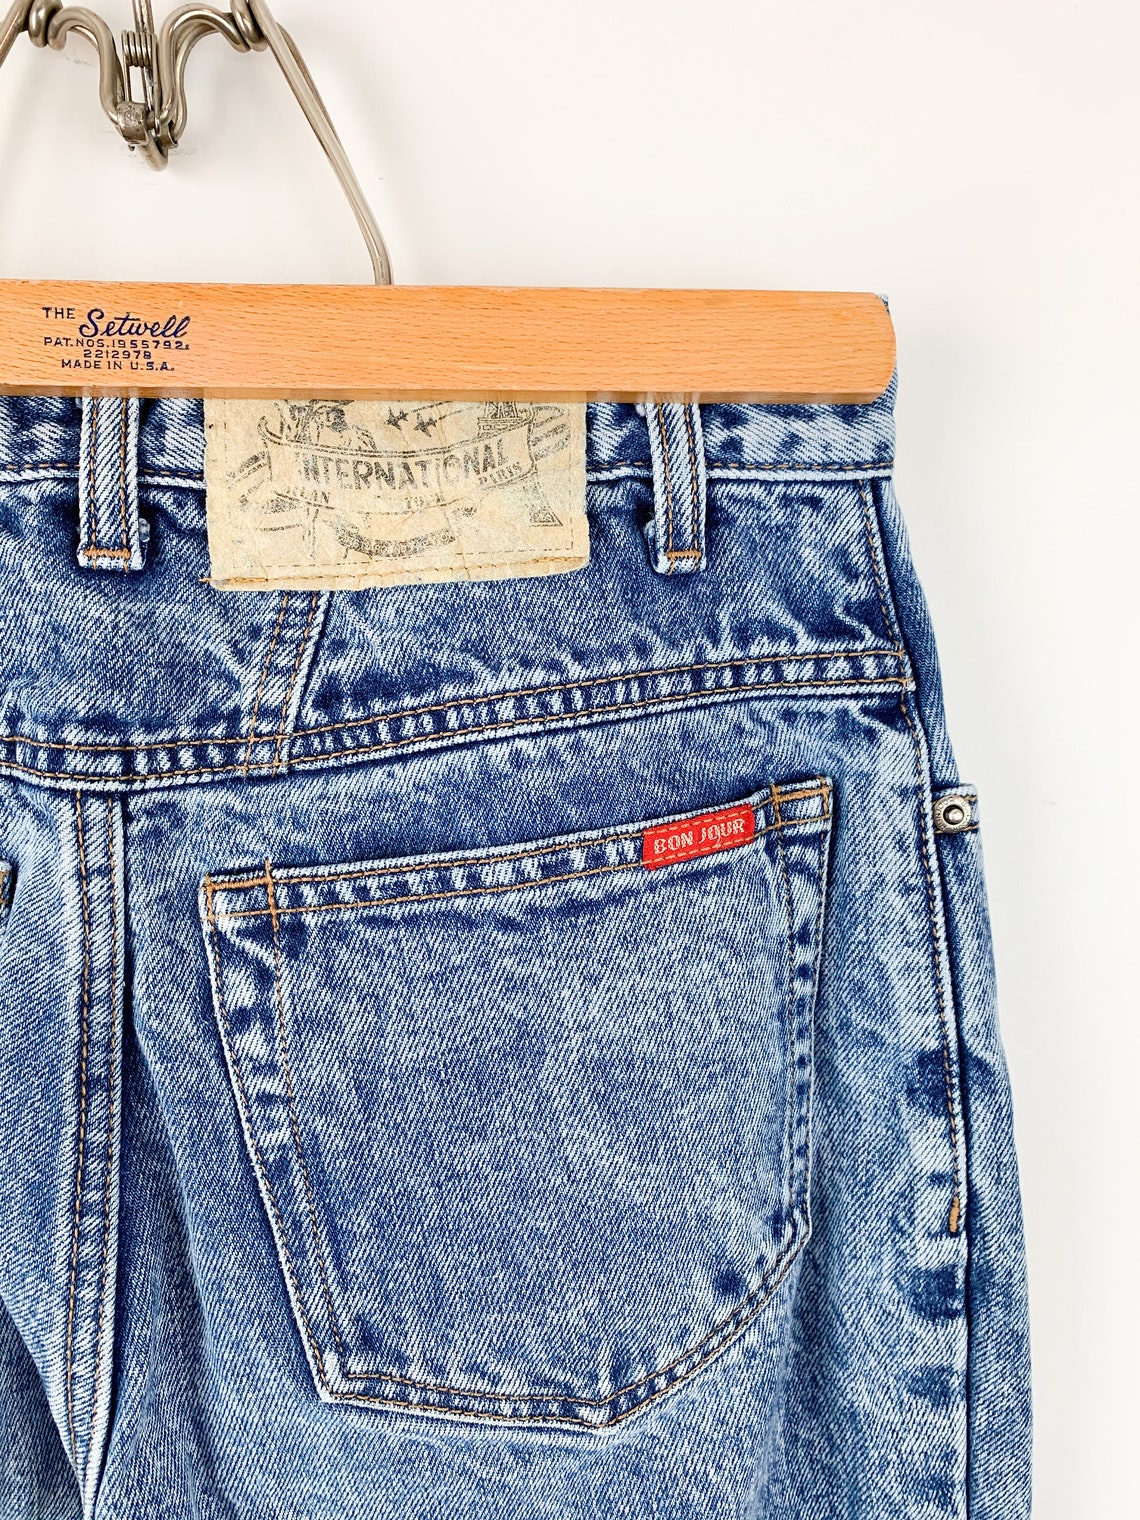 Vintage 80s Bonjour Acid Wash Jeans 27 Waist | Etsy